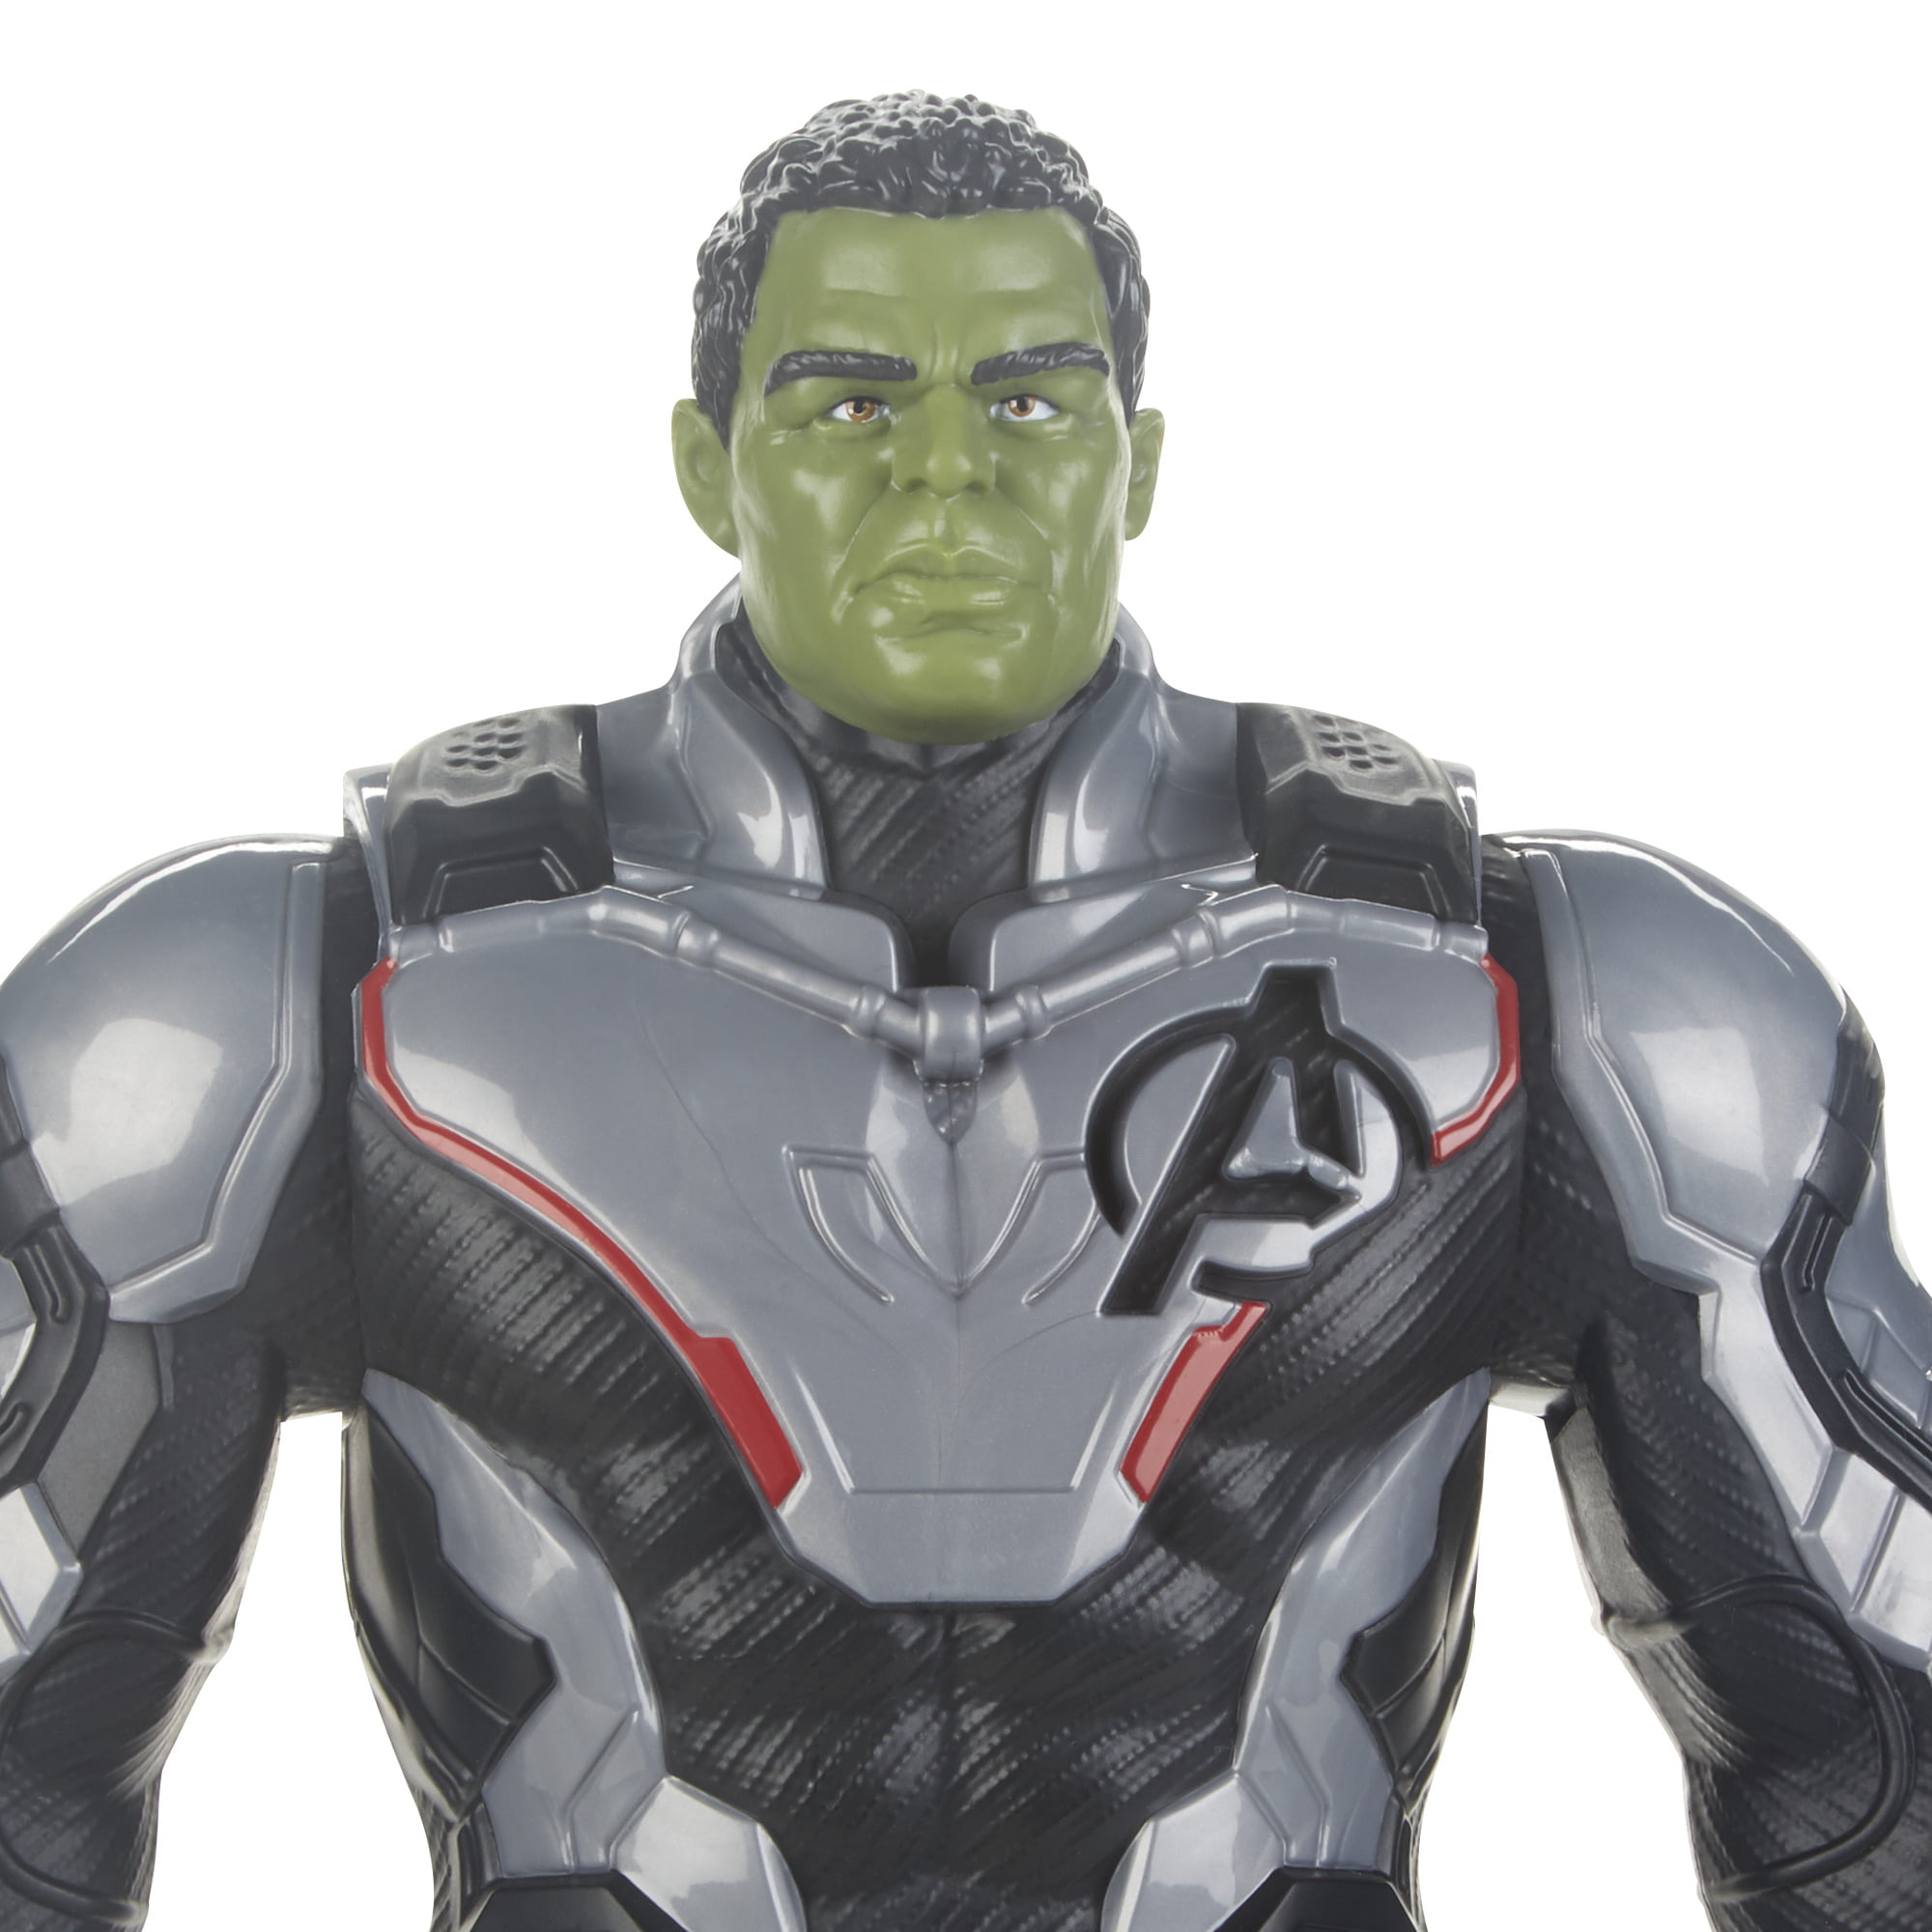 Avengers - Figurine Marvel Avengers Endgame Titan deluxe Hulk 30 cm - Films  et séries - Rue du Commerce